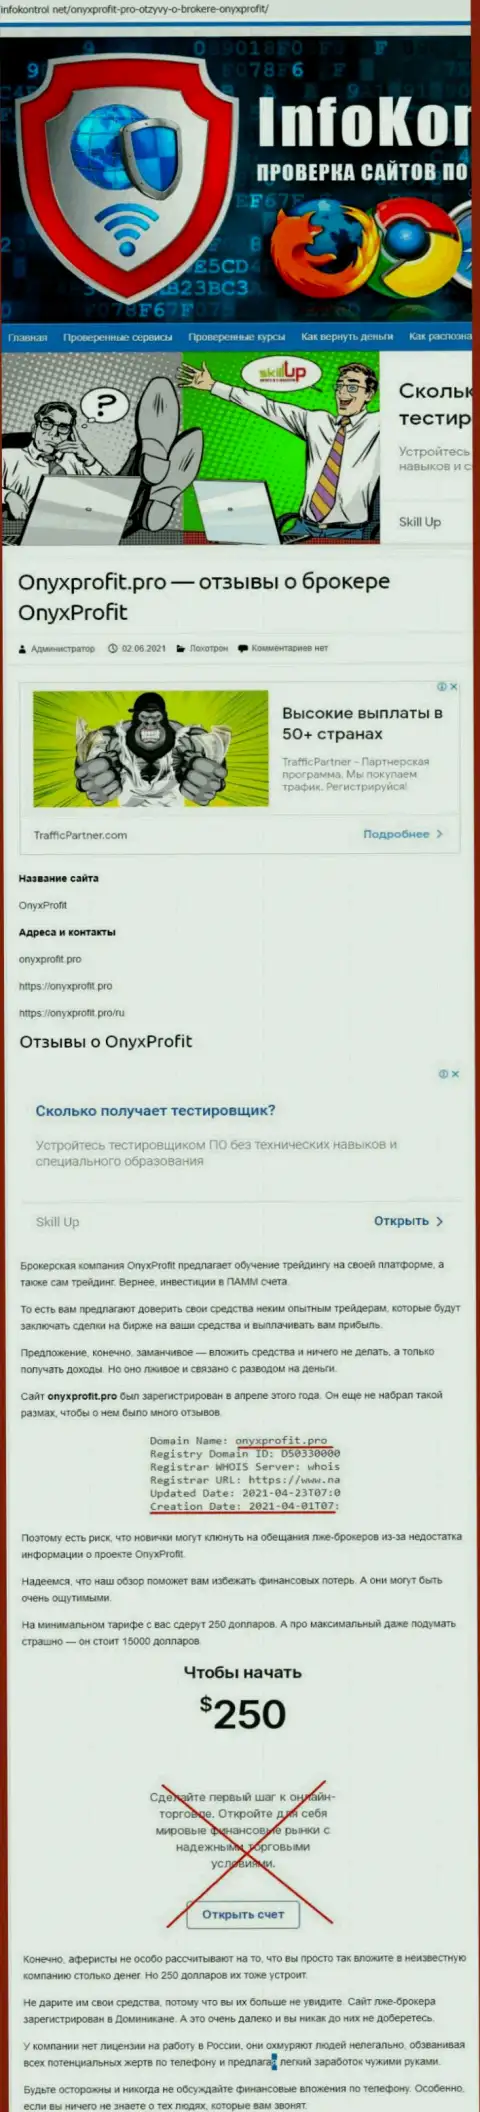 OnyxProfit Pro - это разводняк, вестись на который не стоит (обзор манипуляций конторы)